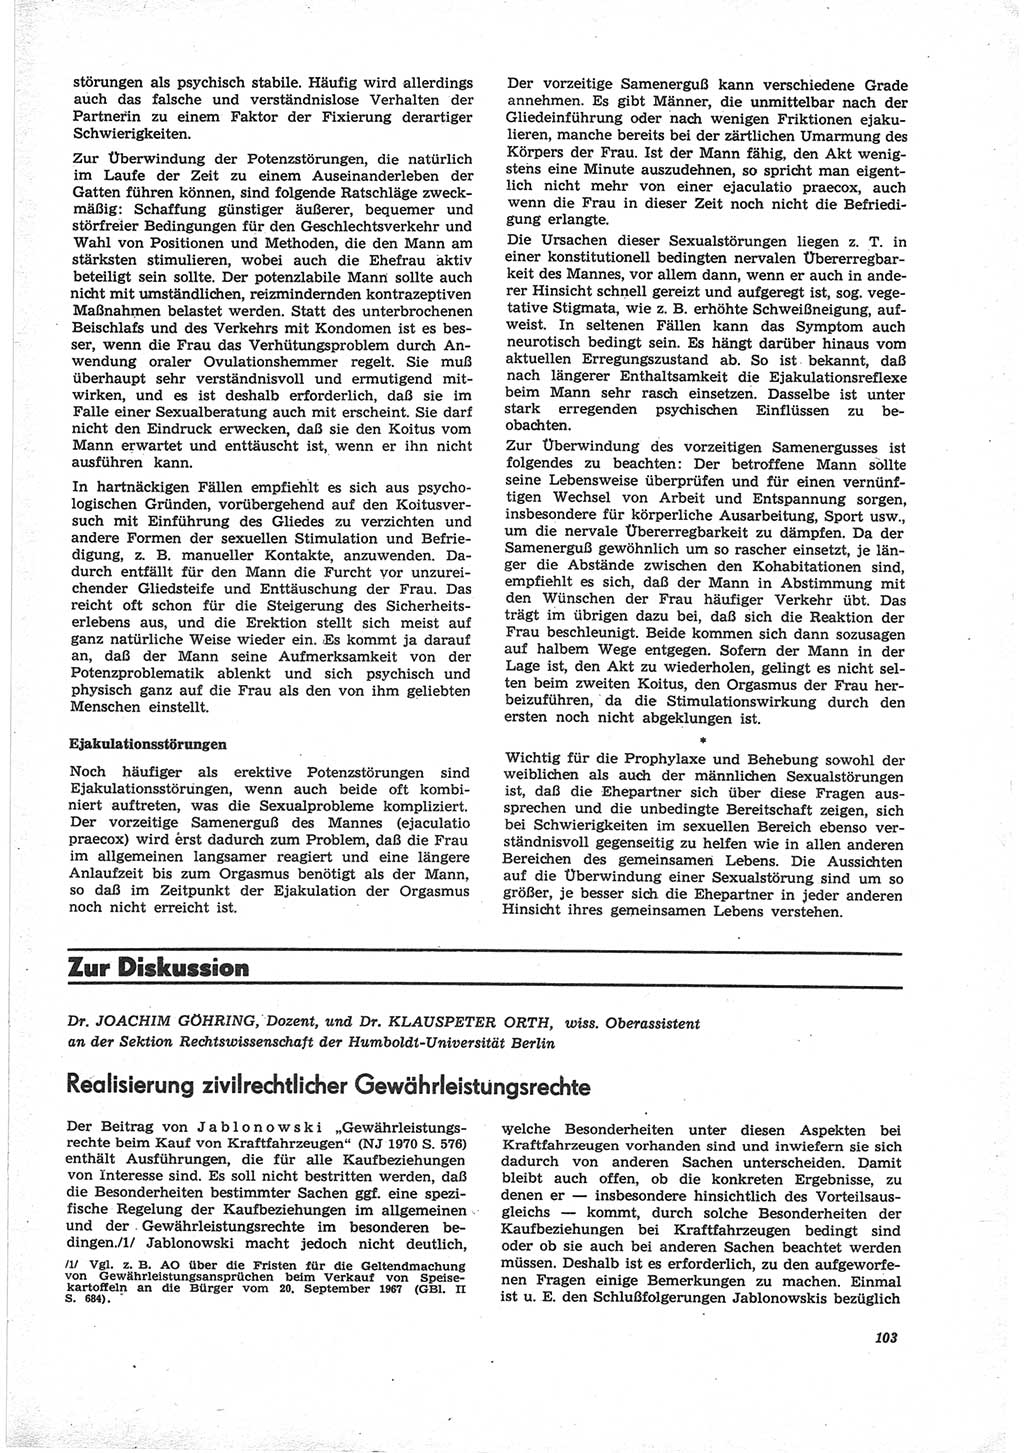 Neue Justiz (NJ), Zeitschrift für Recht und Rechtswissenschaft [Deutsche Demokratische Republik (DDR)], 25. Jahrgang 1971, Seite 103 (NJ DDR 1971, S. 103)